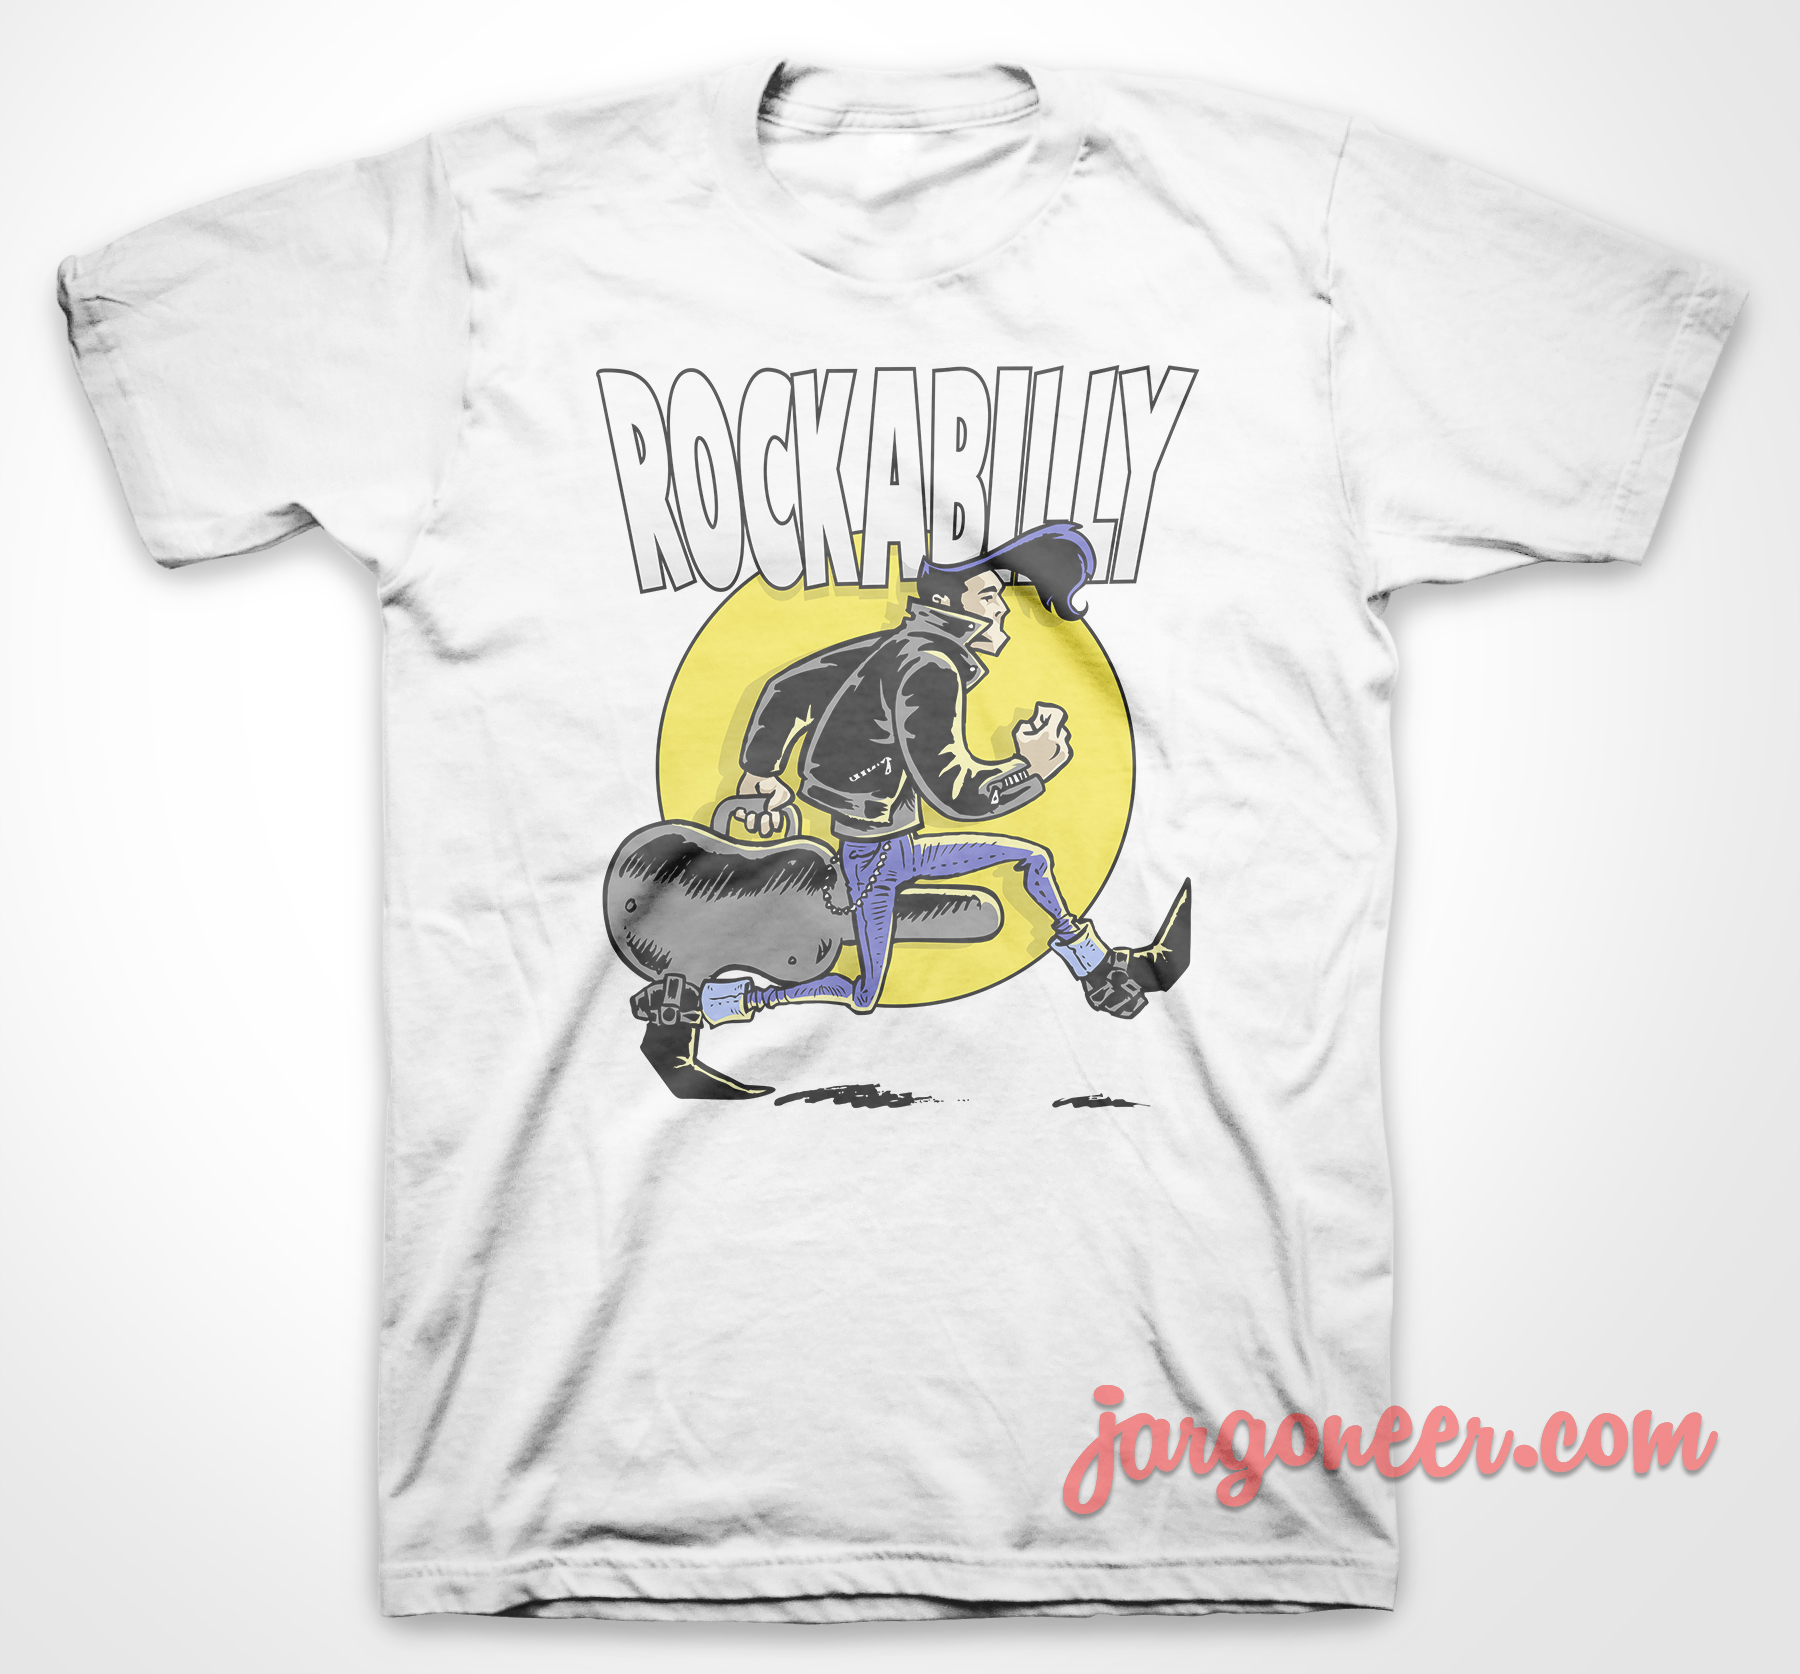 Rockabilly Guy White T Shirt - Shop Unique Graphic Cool Shirt Designs